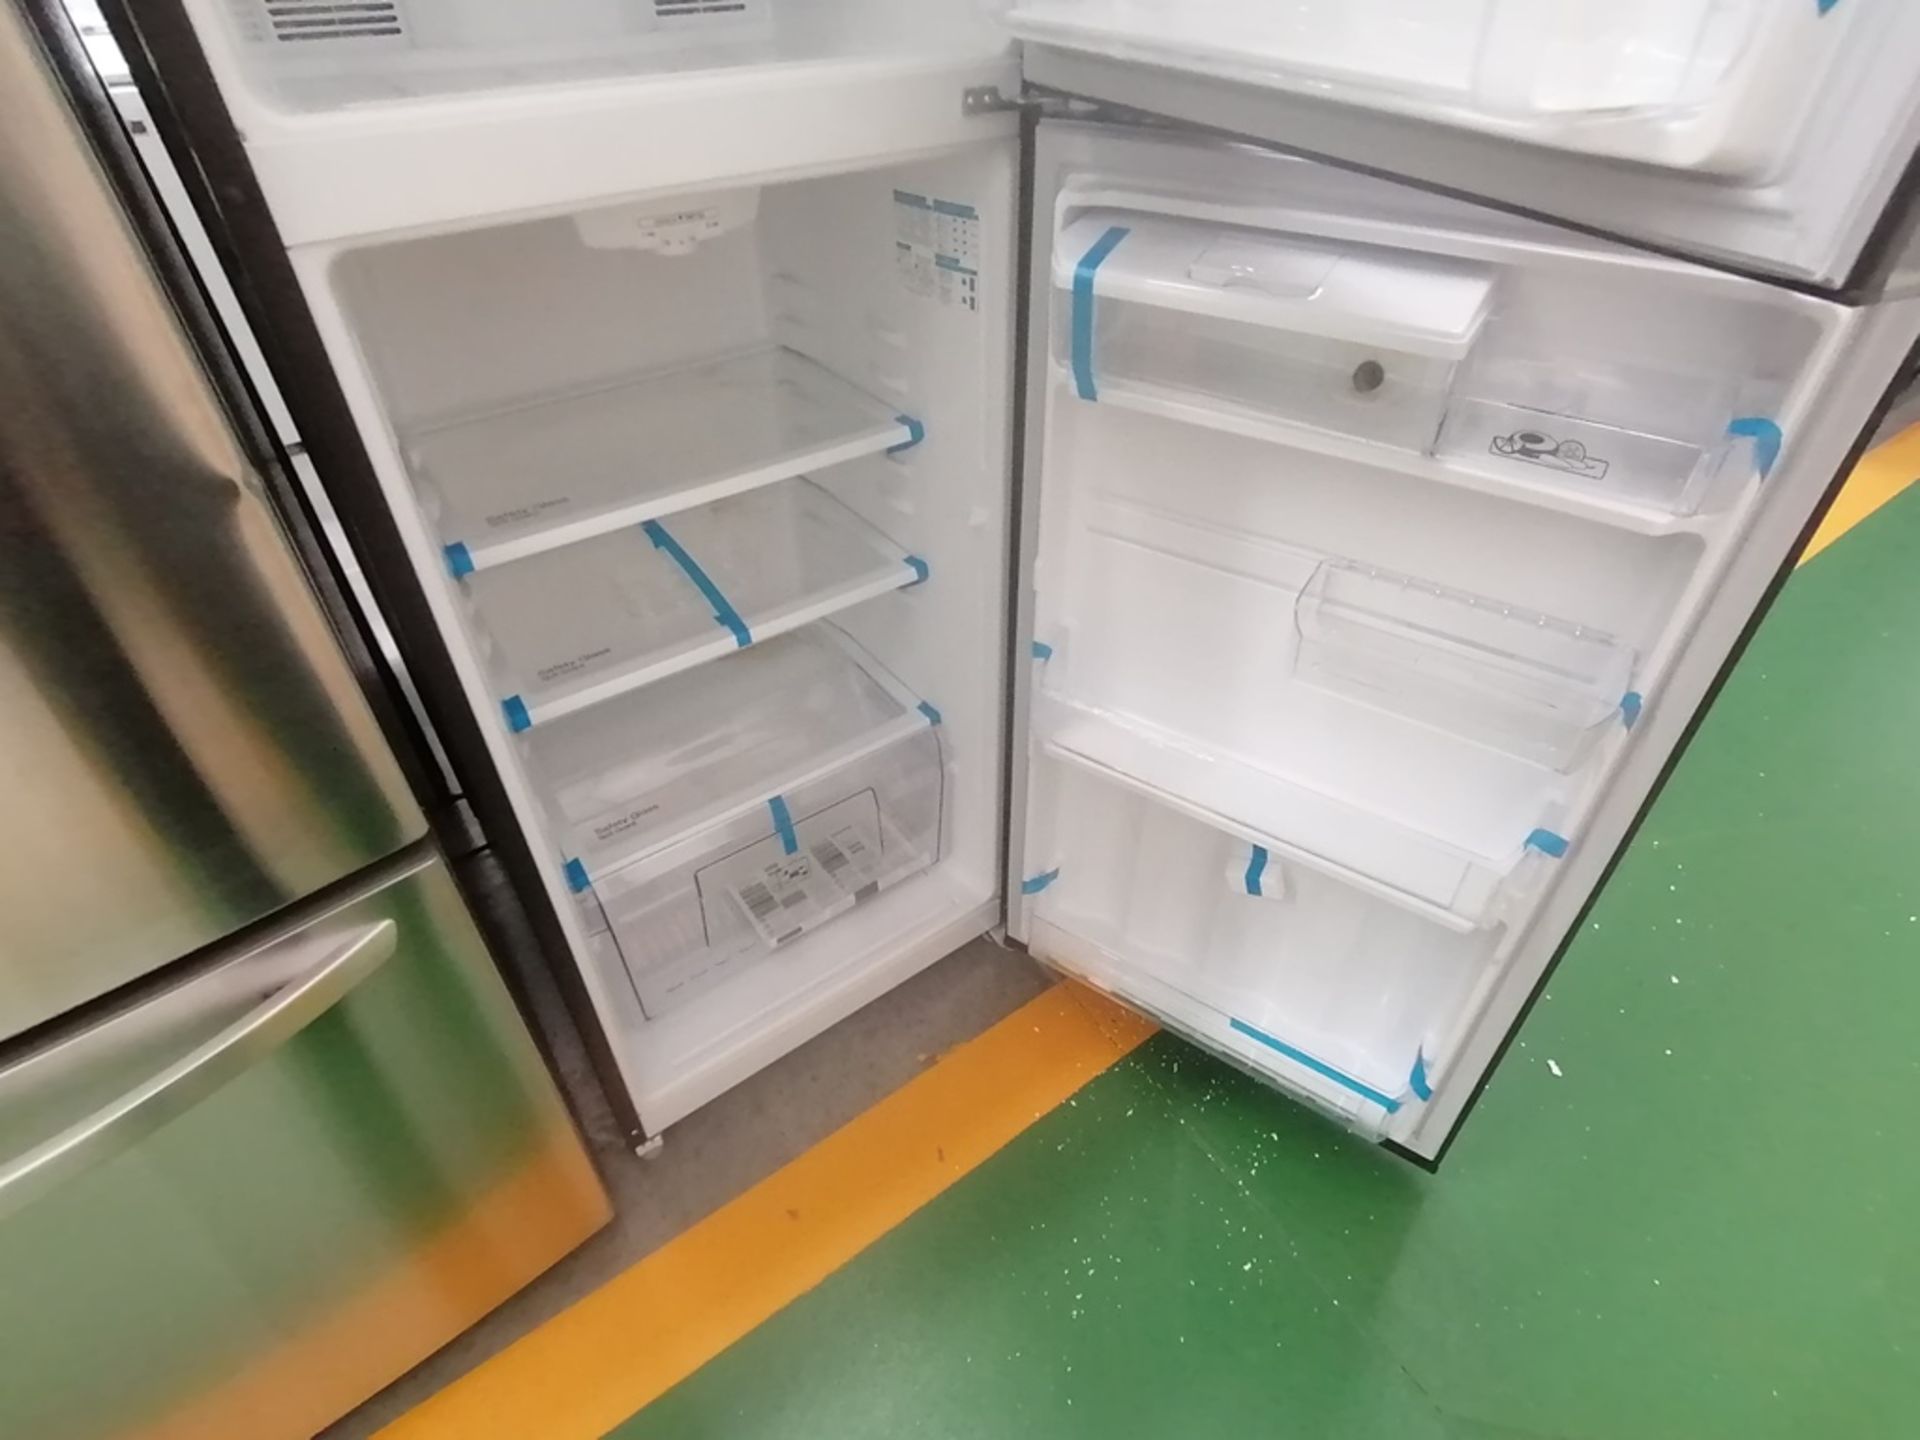 Lote de 2 refrigeradores incluye: 1 Refrigerador con dispensador de agua, Marca Mabe, Modelo RME360 - Image 10 of 15